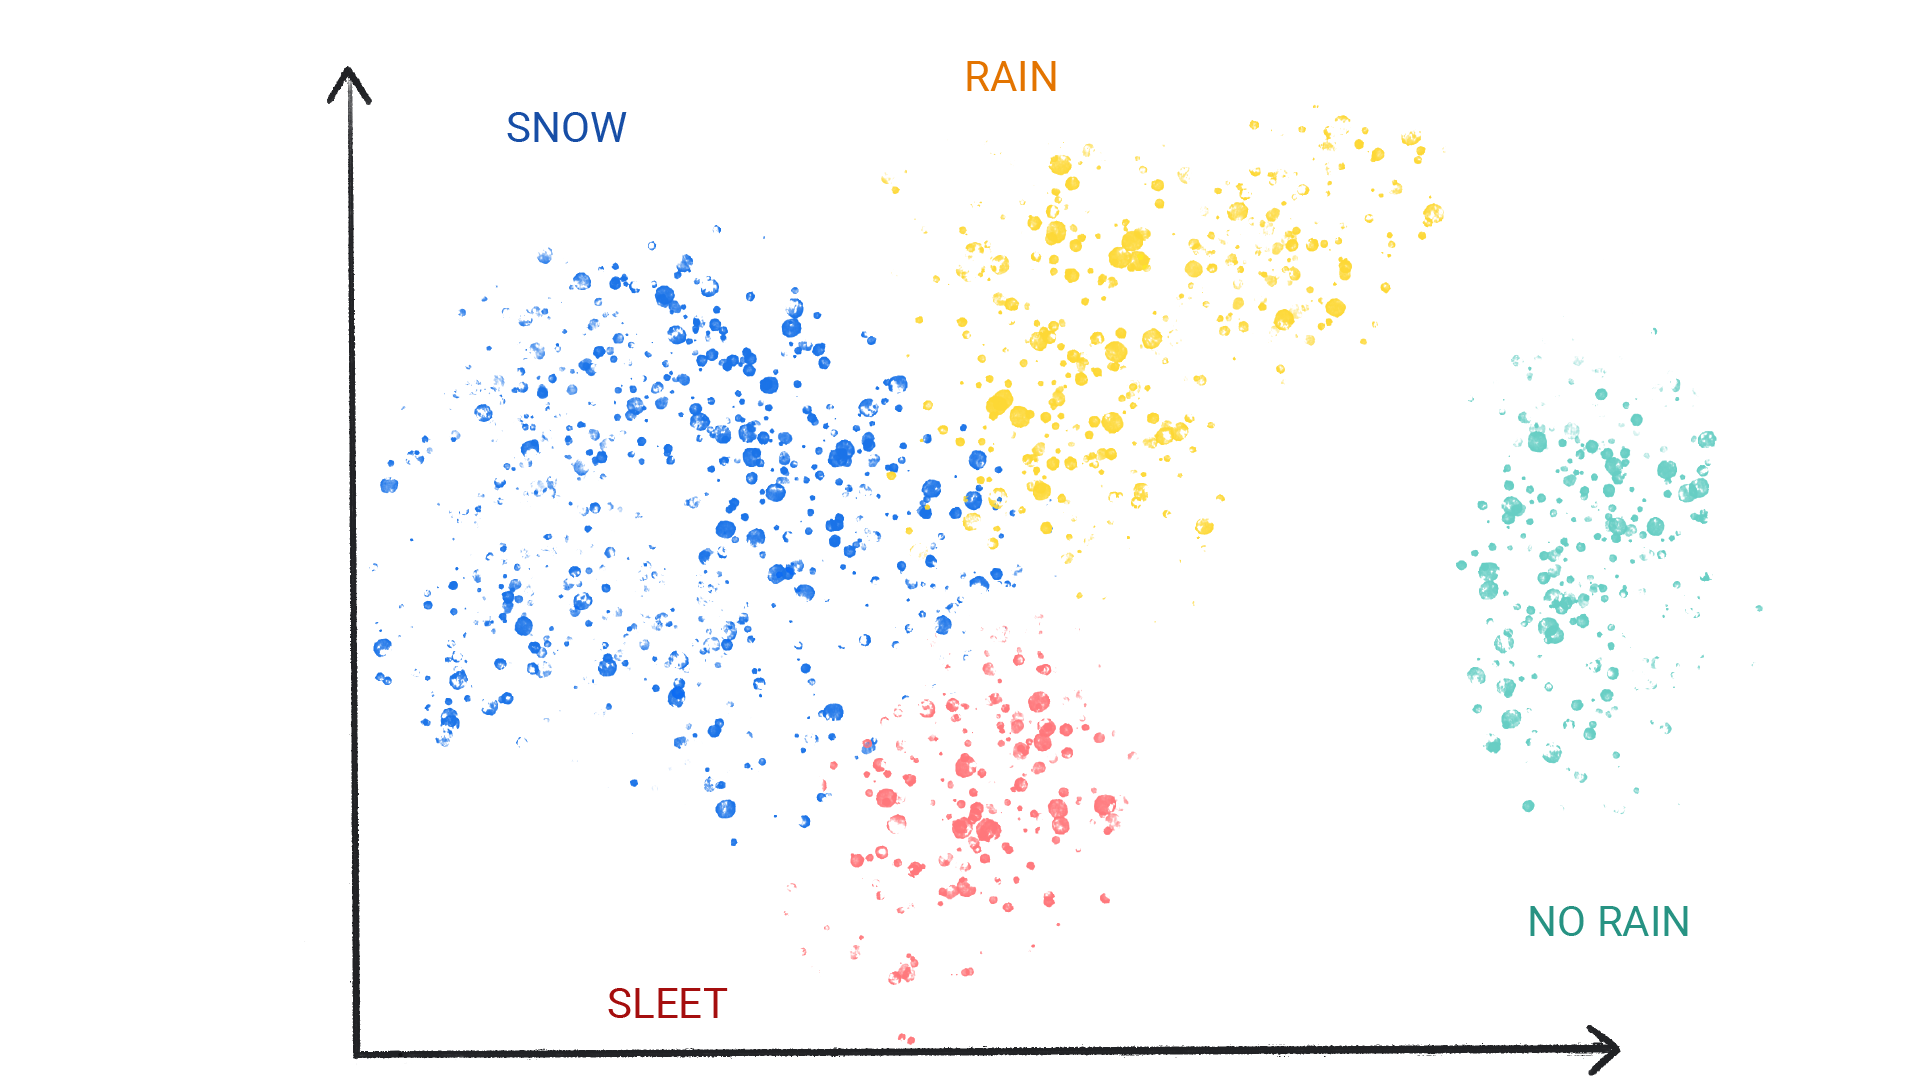 Una imagen que muestra puntos de colores en grupos etiquetados como nieve, lluvia, granizo y sin lluvia.